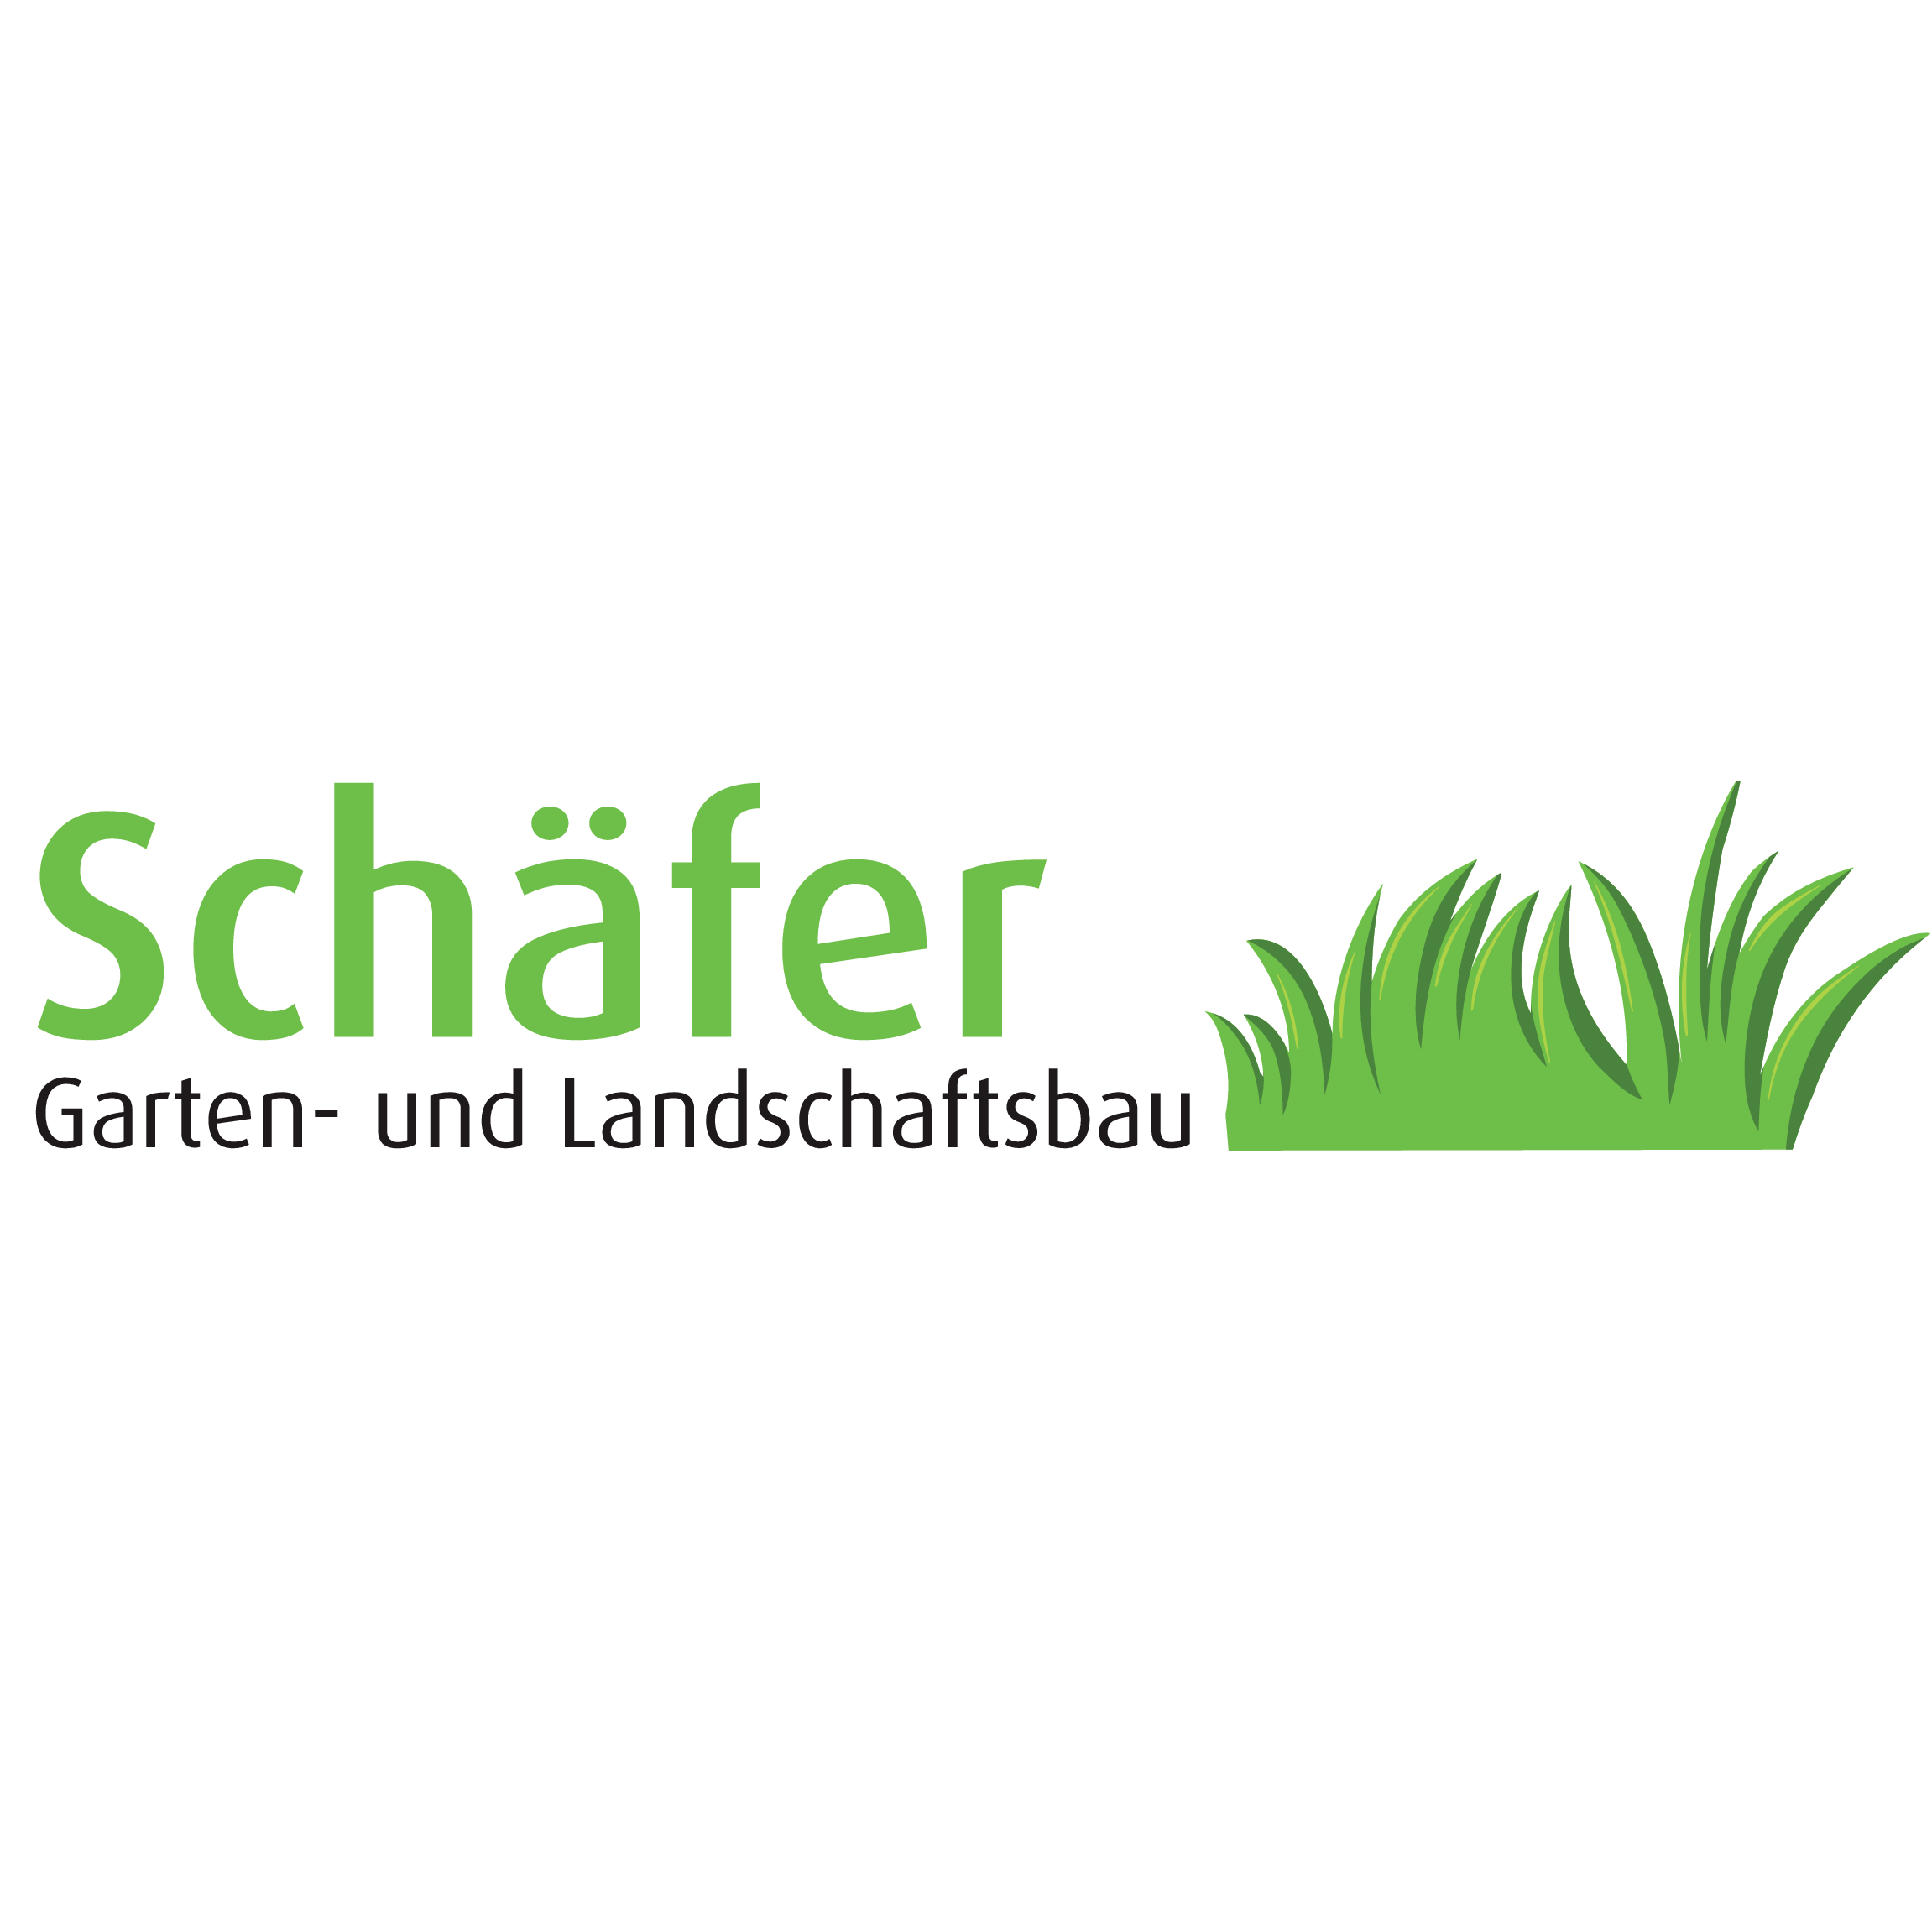 Schäfer Garten - und Landschaftsbau  